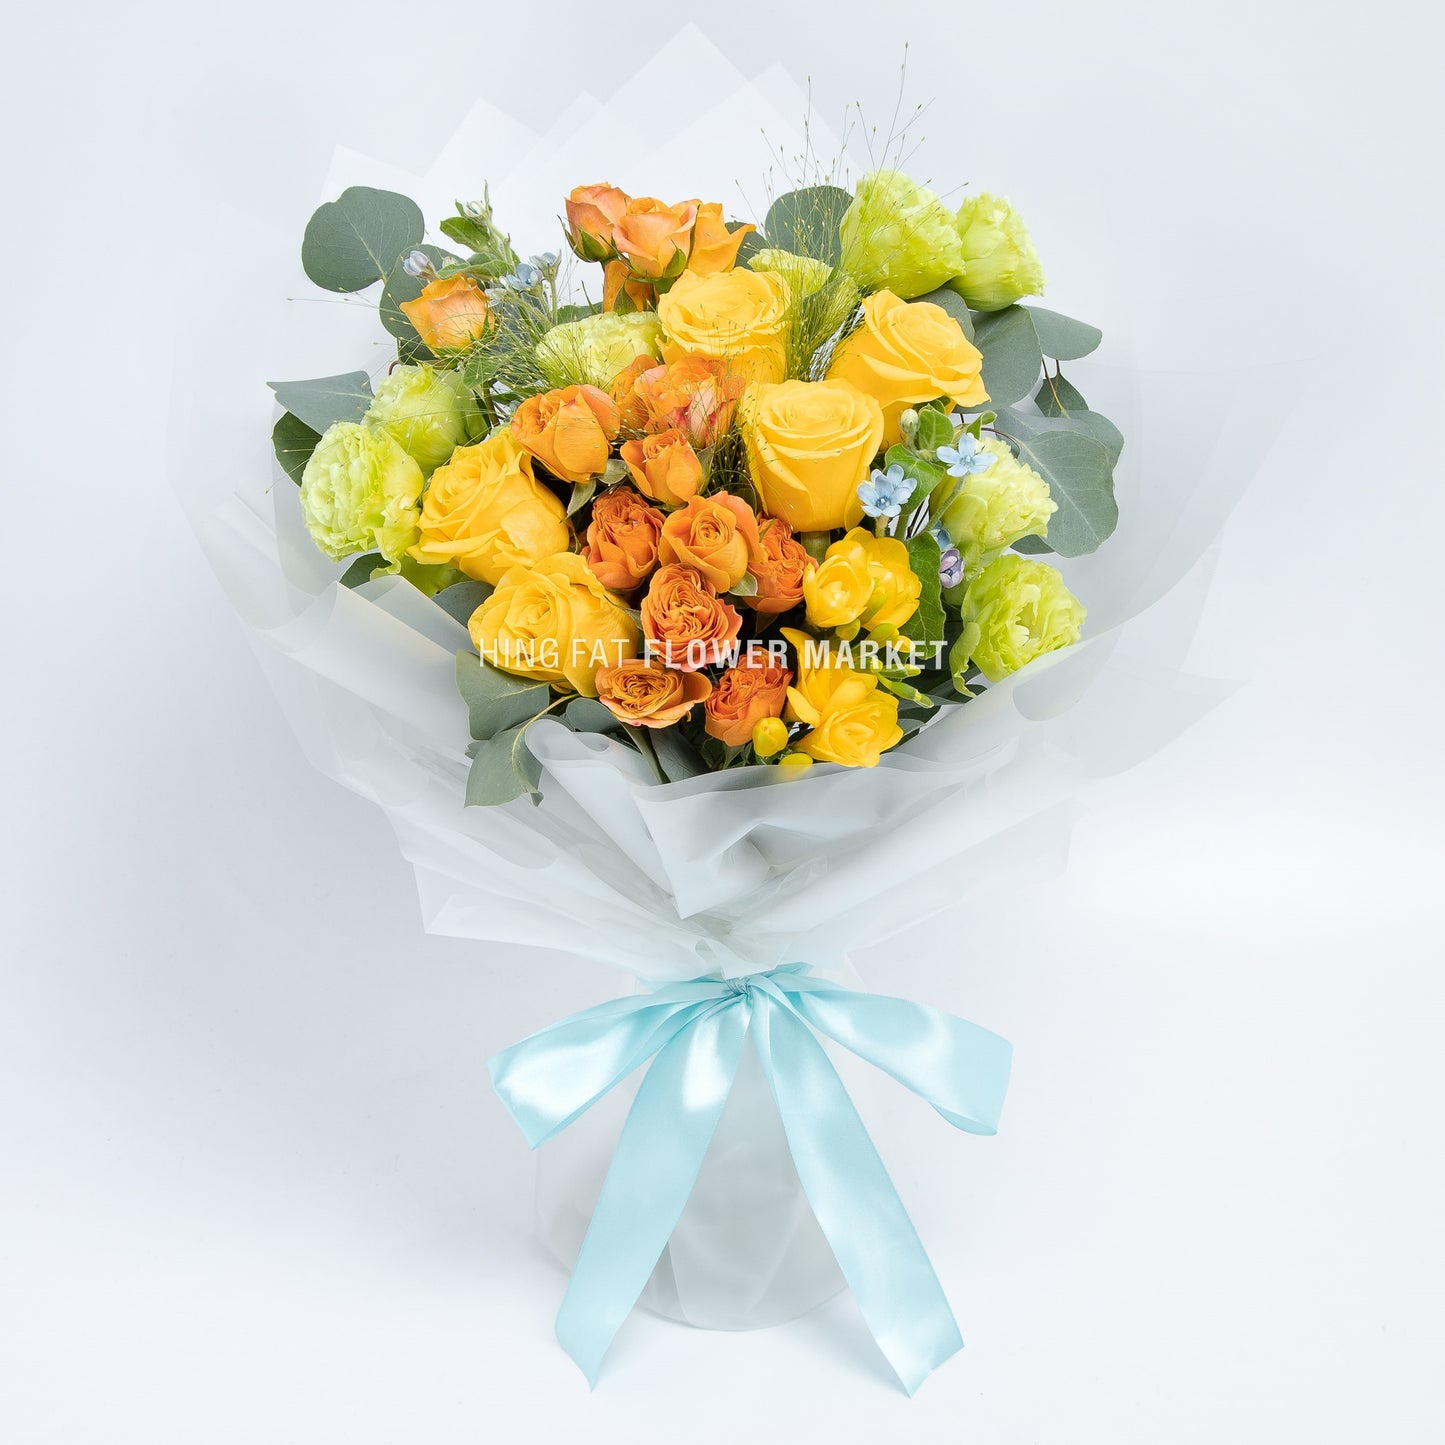 黃橙色玫瑰藍星花花束  Yellow and orange rose and tweedia bouquet